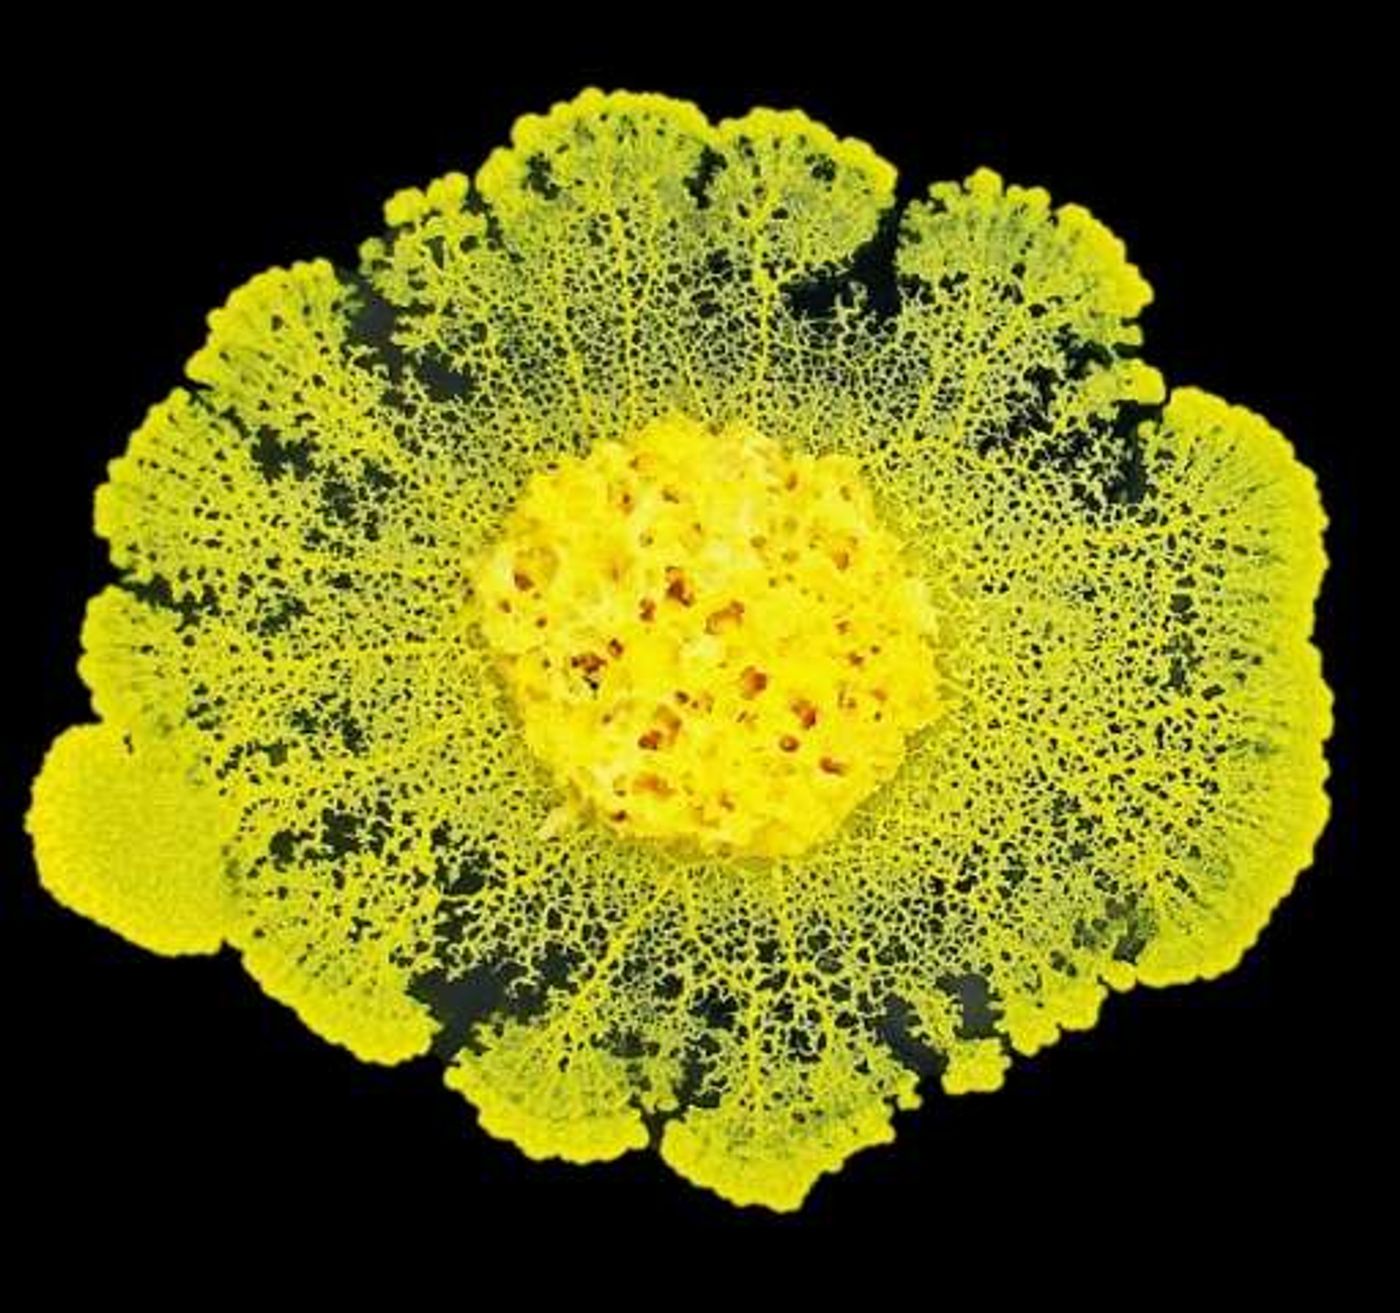 The slime mold Physarum polycephalum